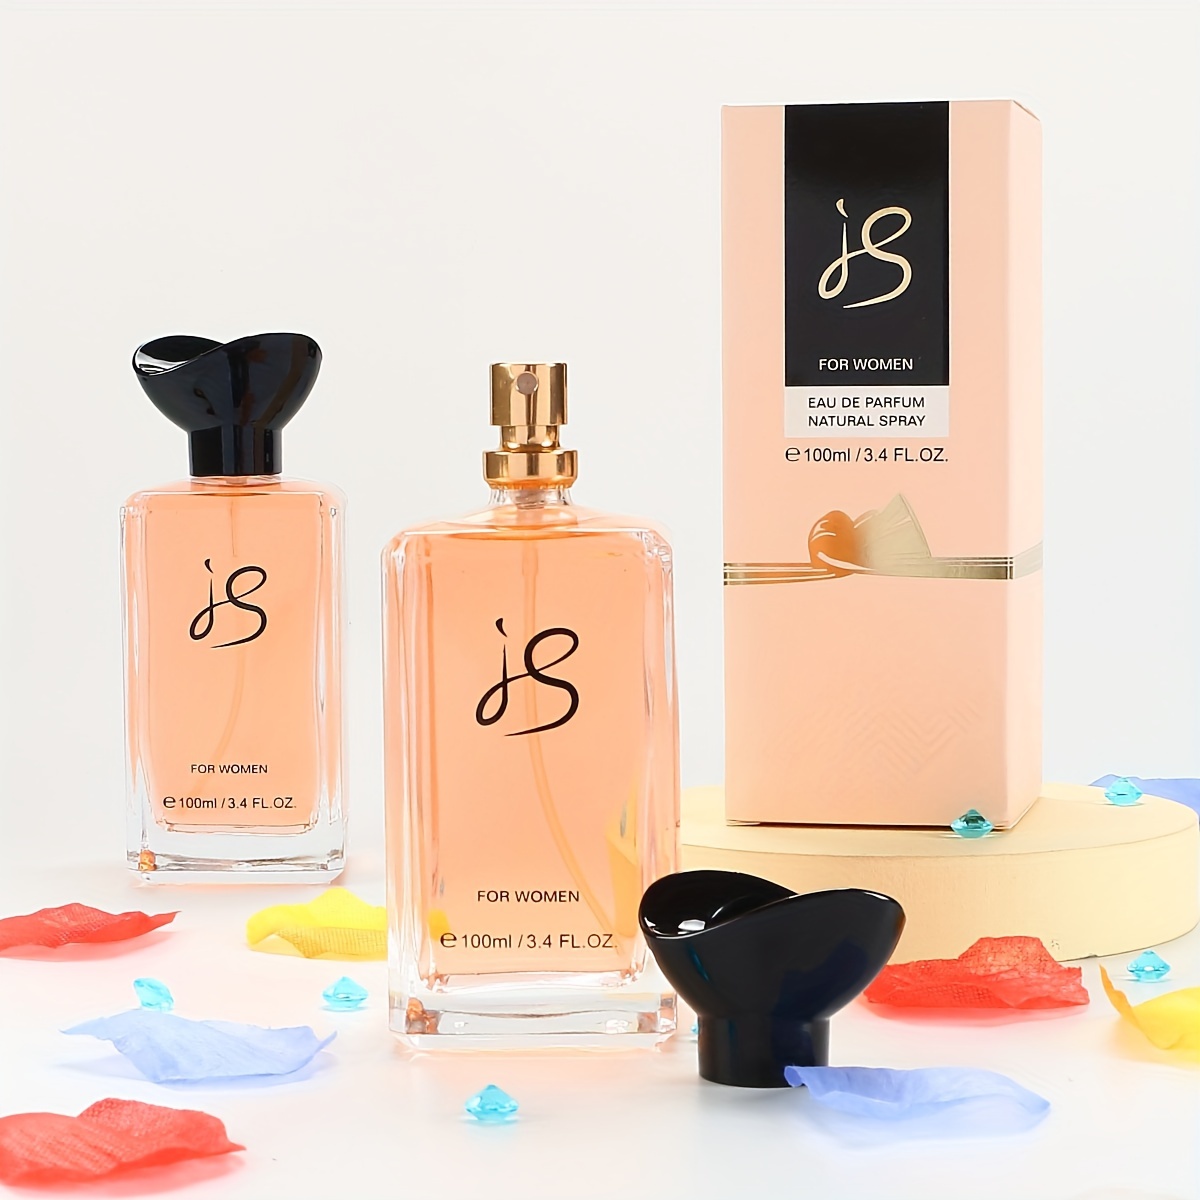 Buy Secret Temptation Dream Eau De Parfum for Women, 50ml, Premium  Long-Lasting Luxury Perfume, Floral and Fruity Fragrance